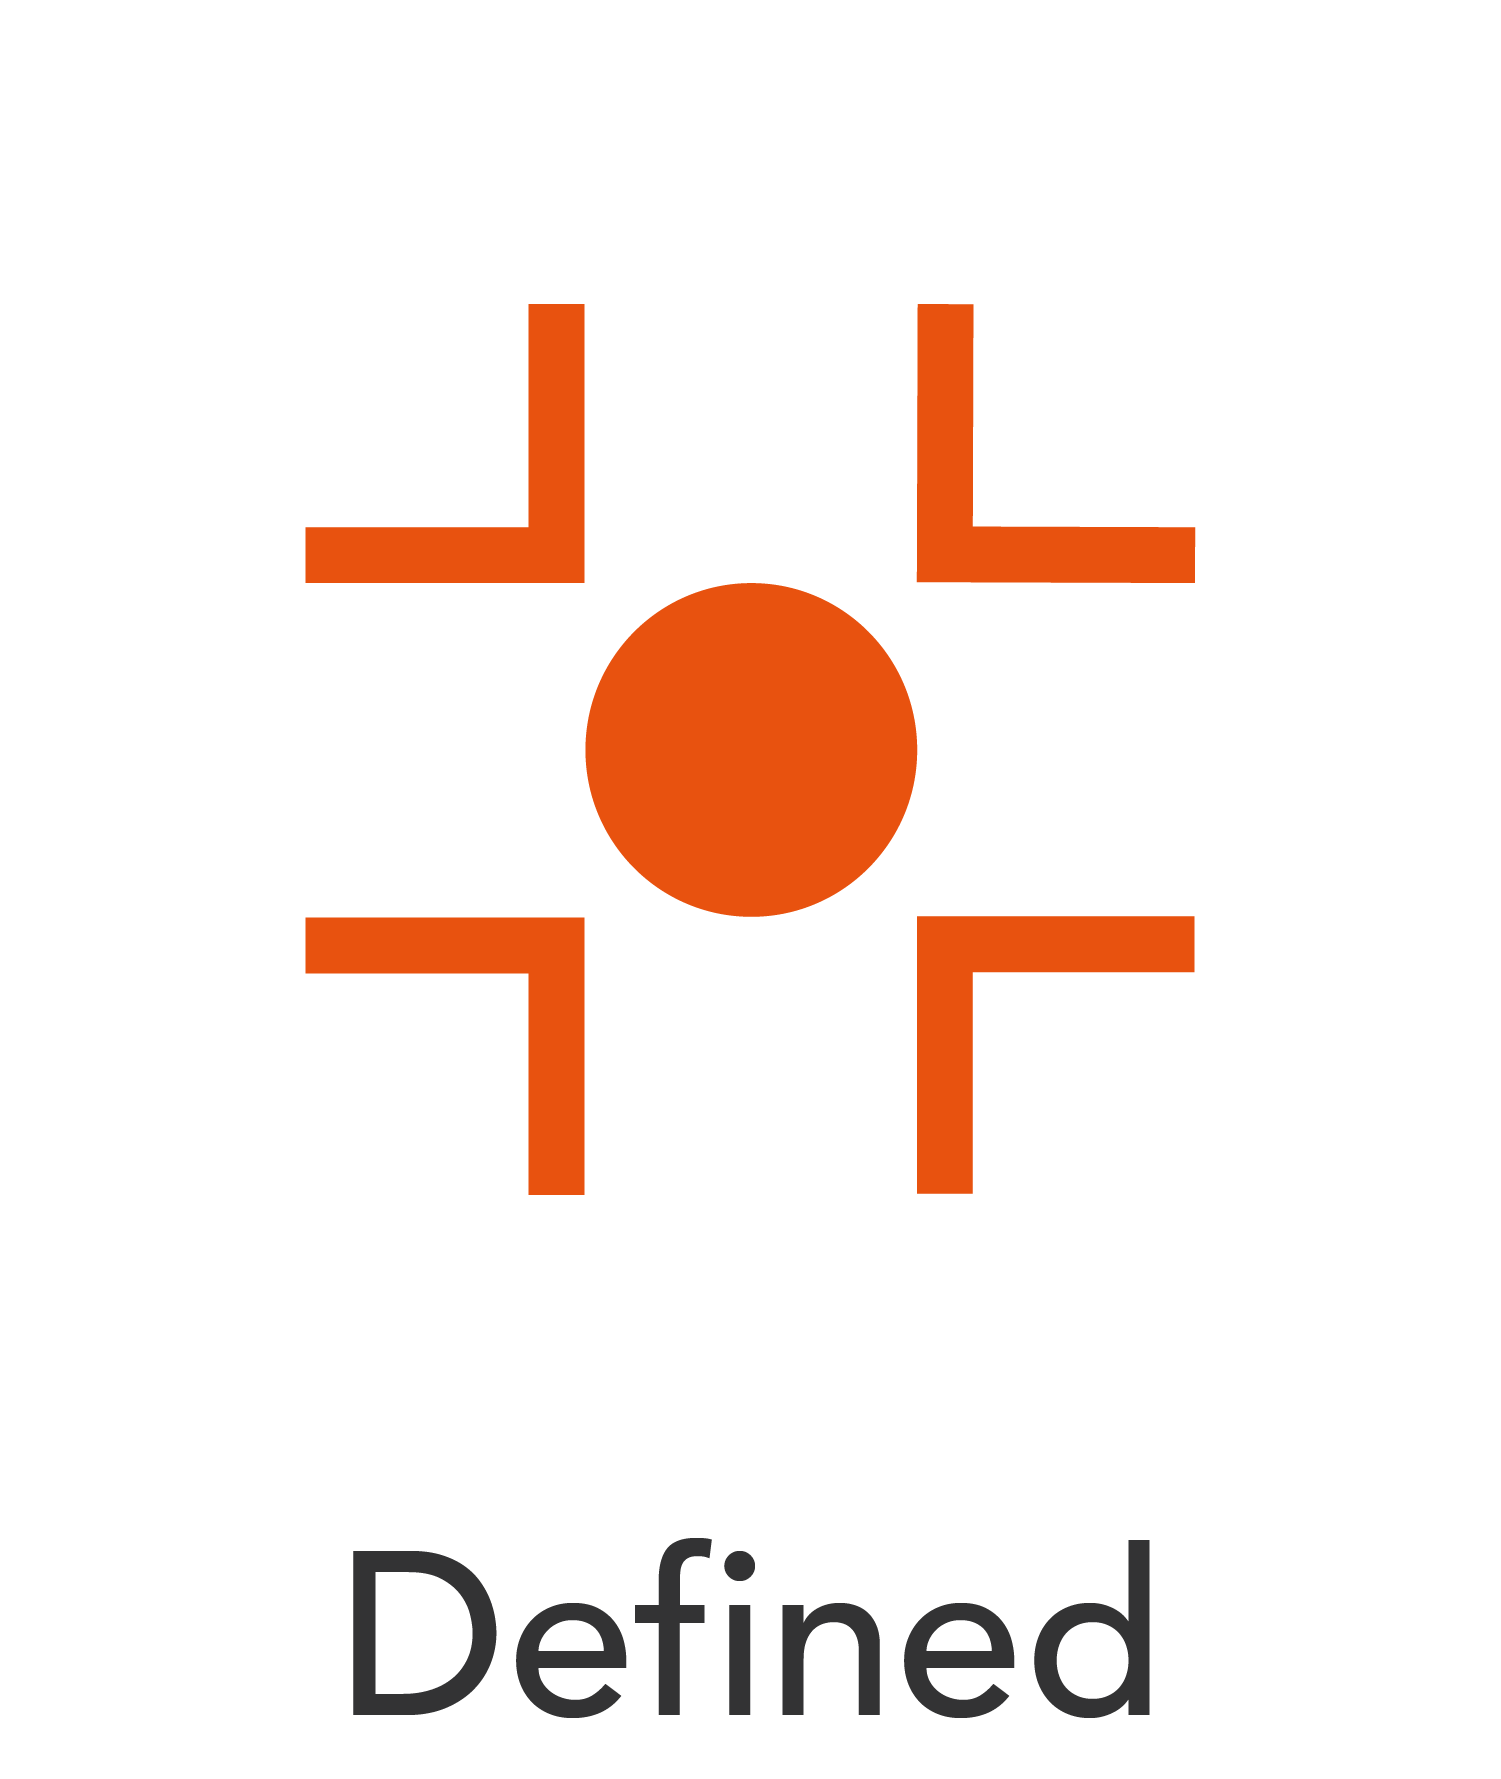 Defined-orange-text